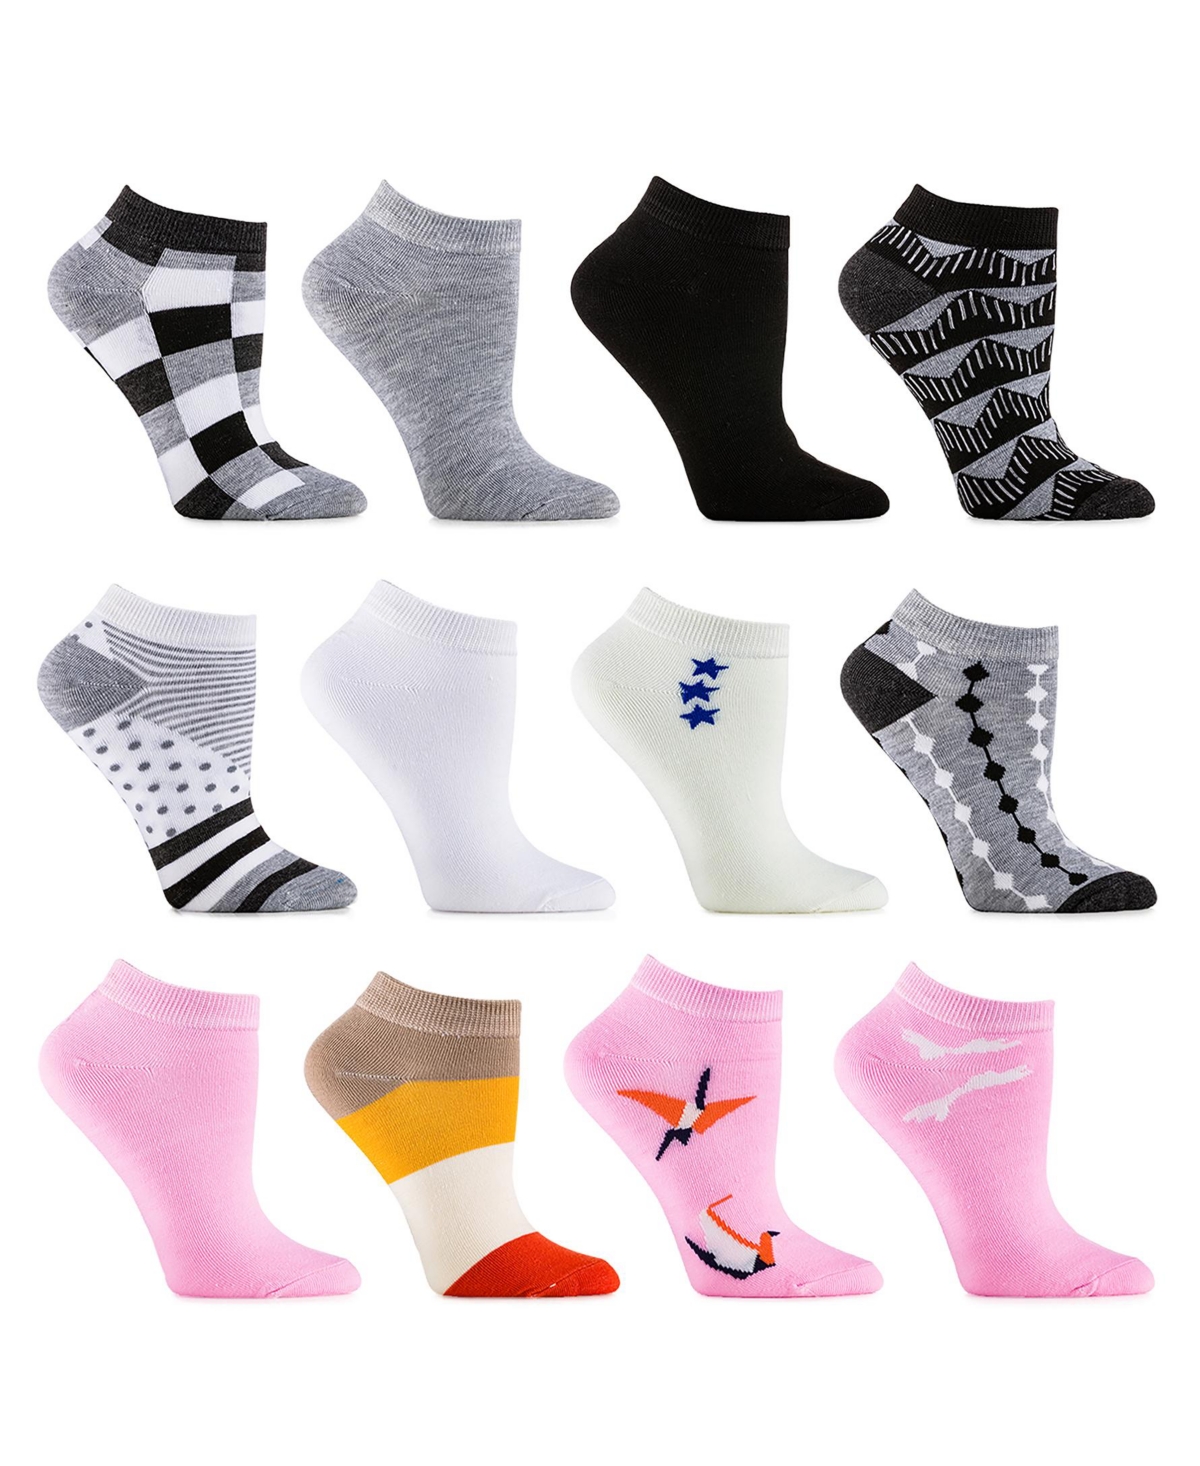 Womens Multicolor Ankle Socks 12 Pack - Full bloom